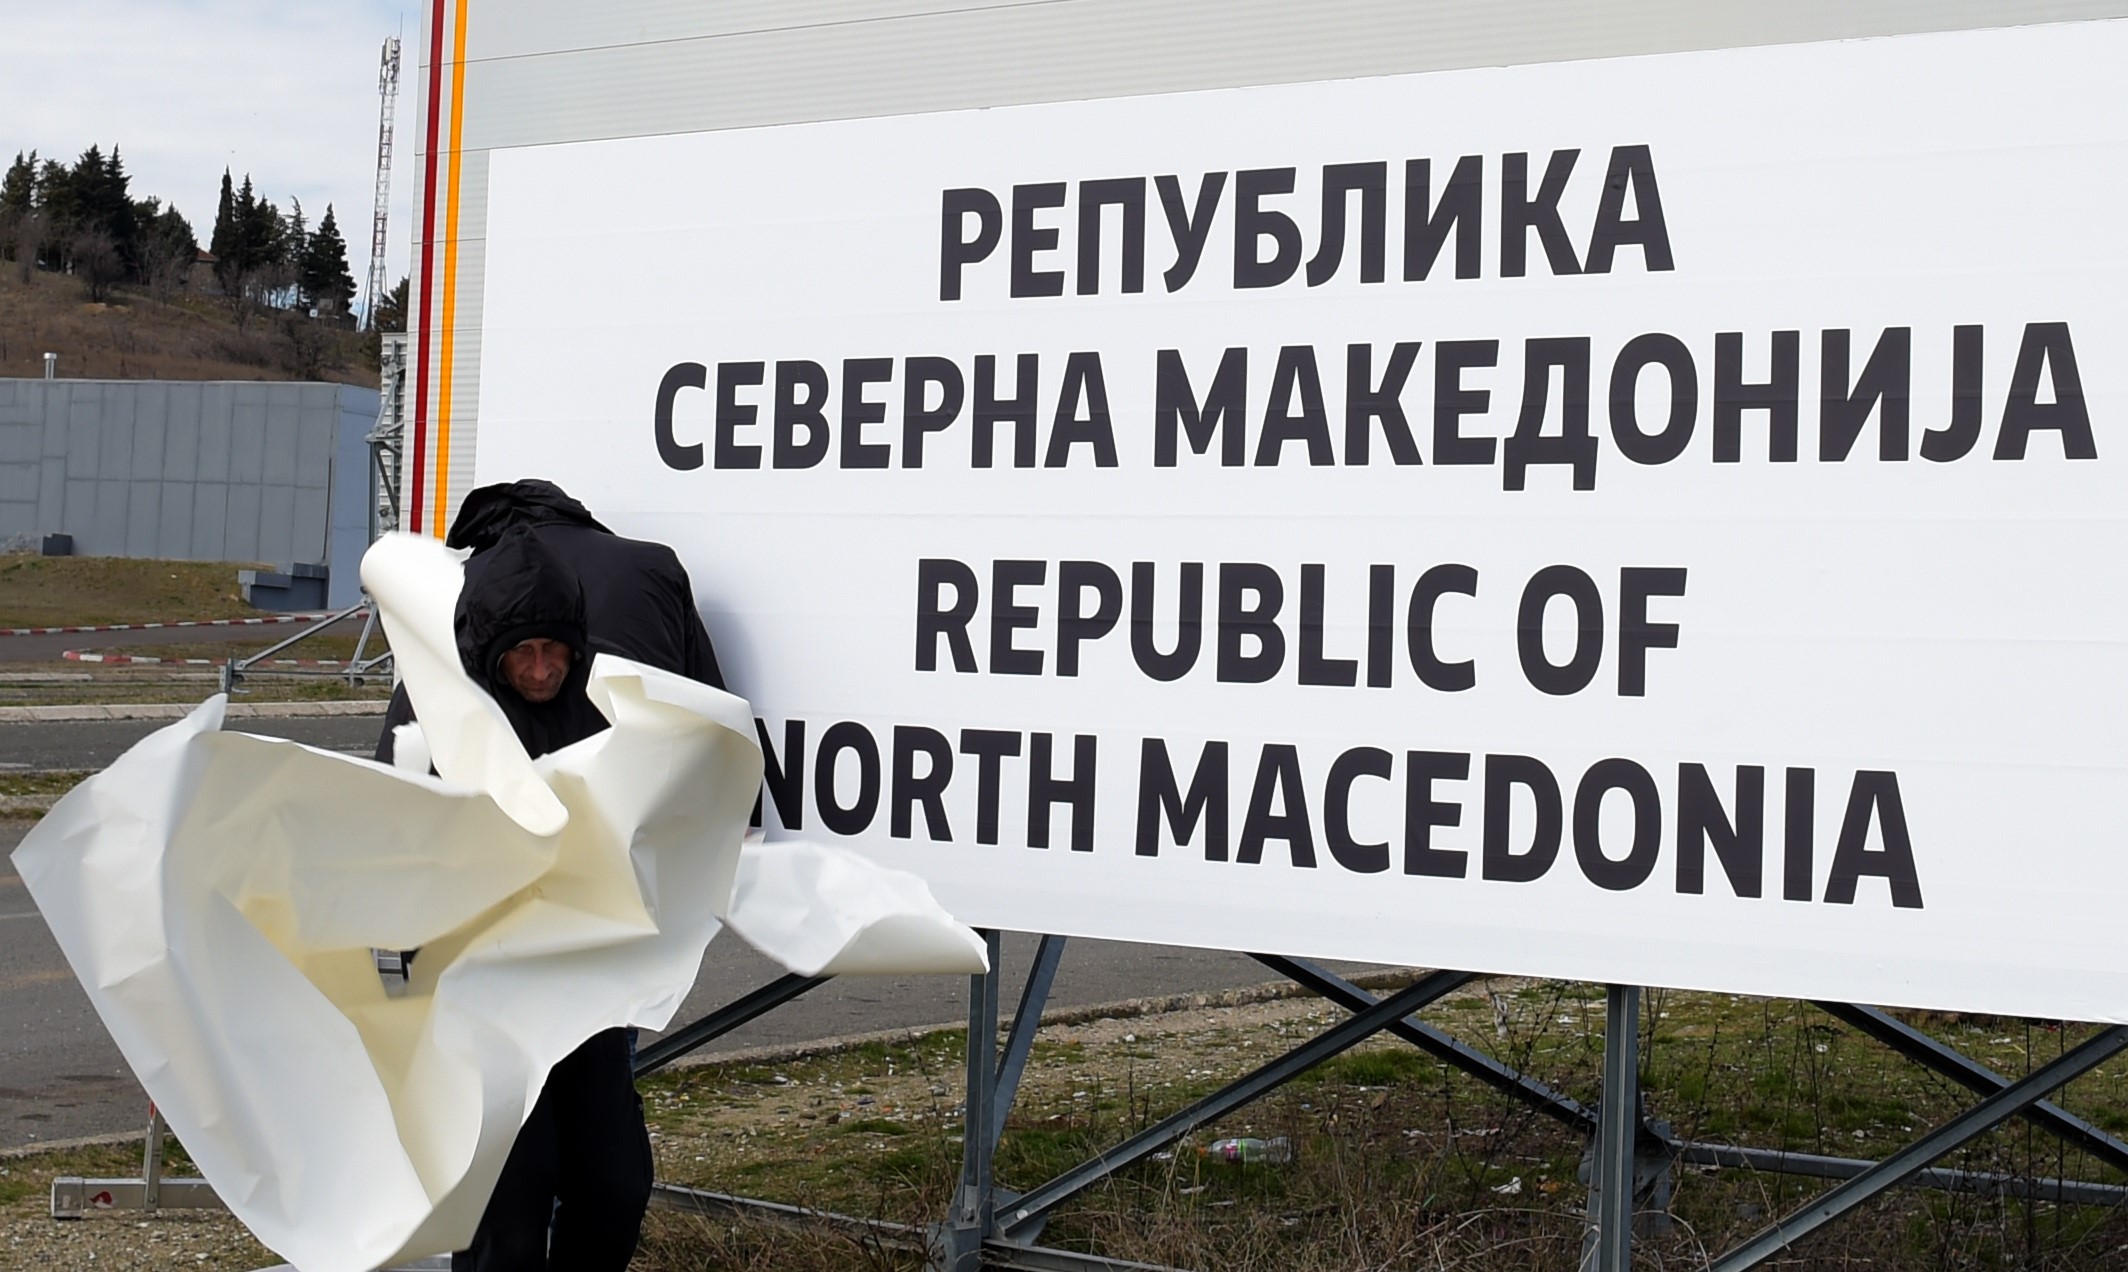 Lecserélték a feliratot a határon, egy hét alatt megszületett Észak-Macedónia